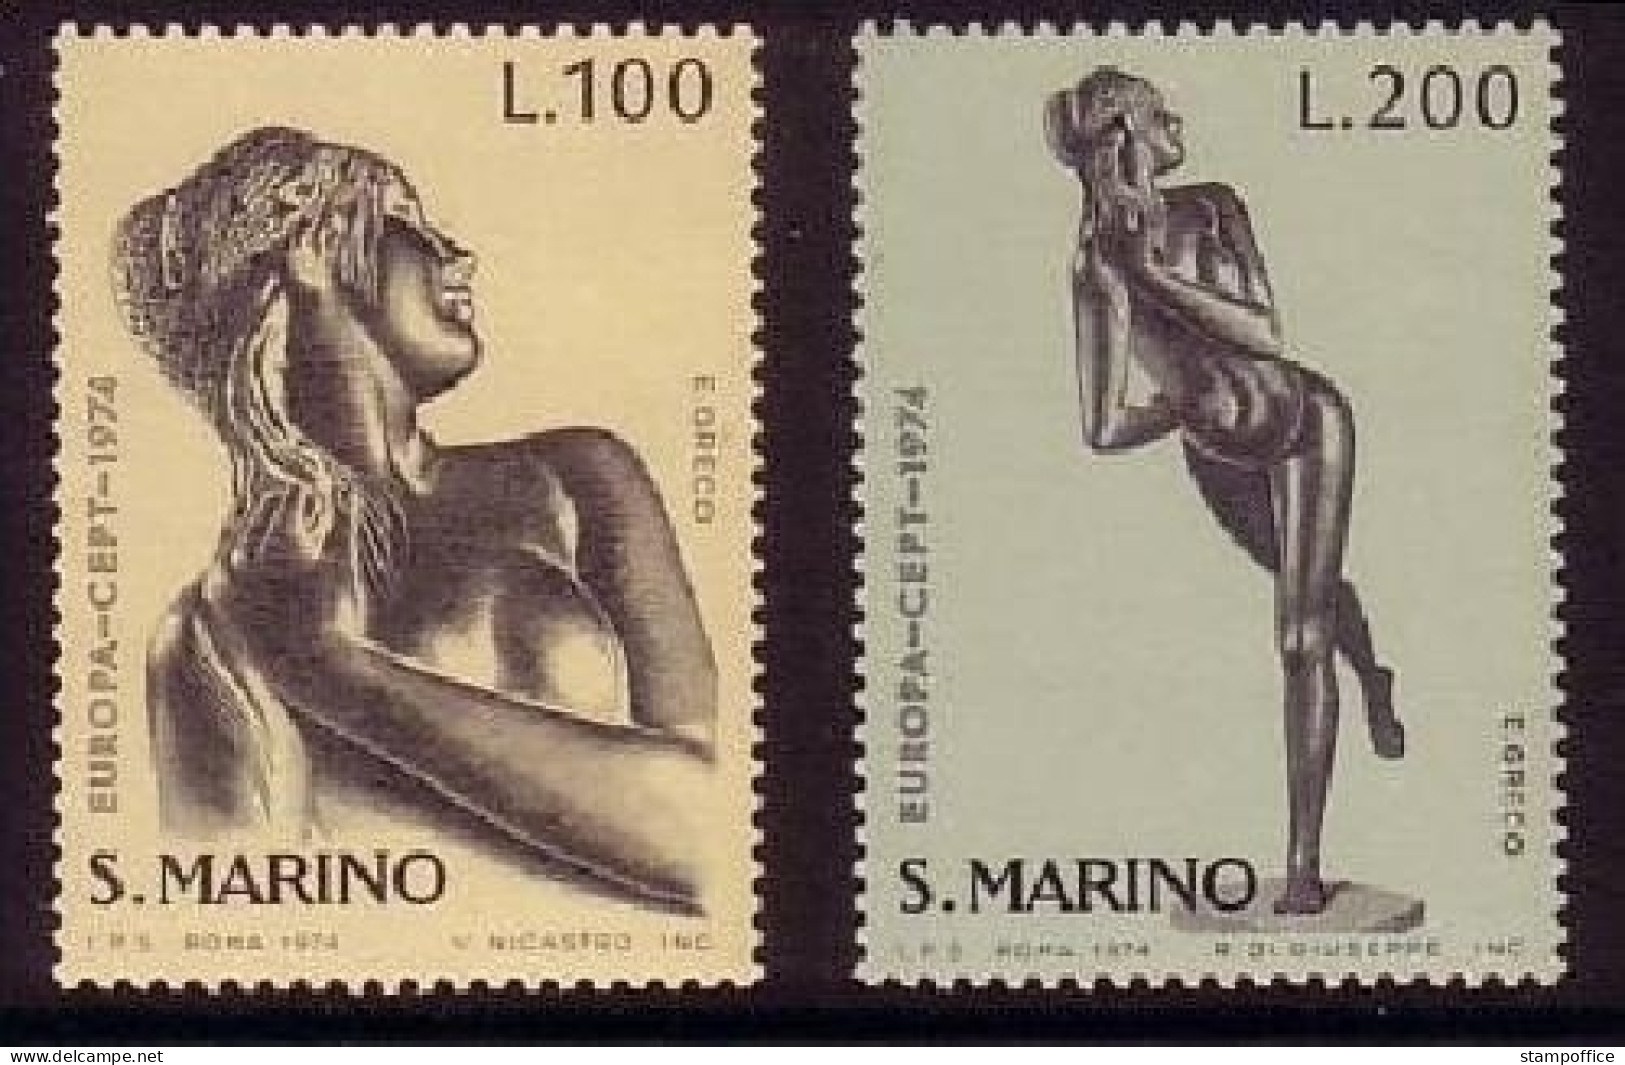 SAN MARINO MI-NR. 1067-1068 POSTFRISCH(MINT) EUROPA 1974 SKULPTUREN - 1974